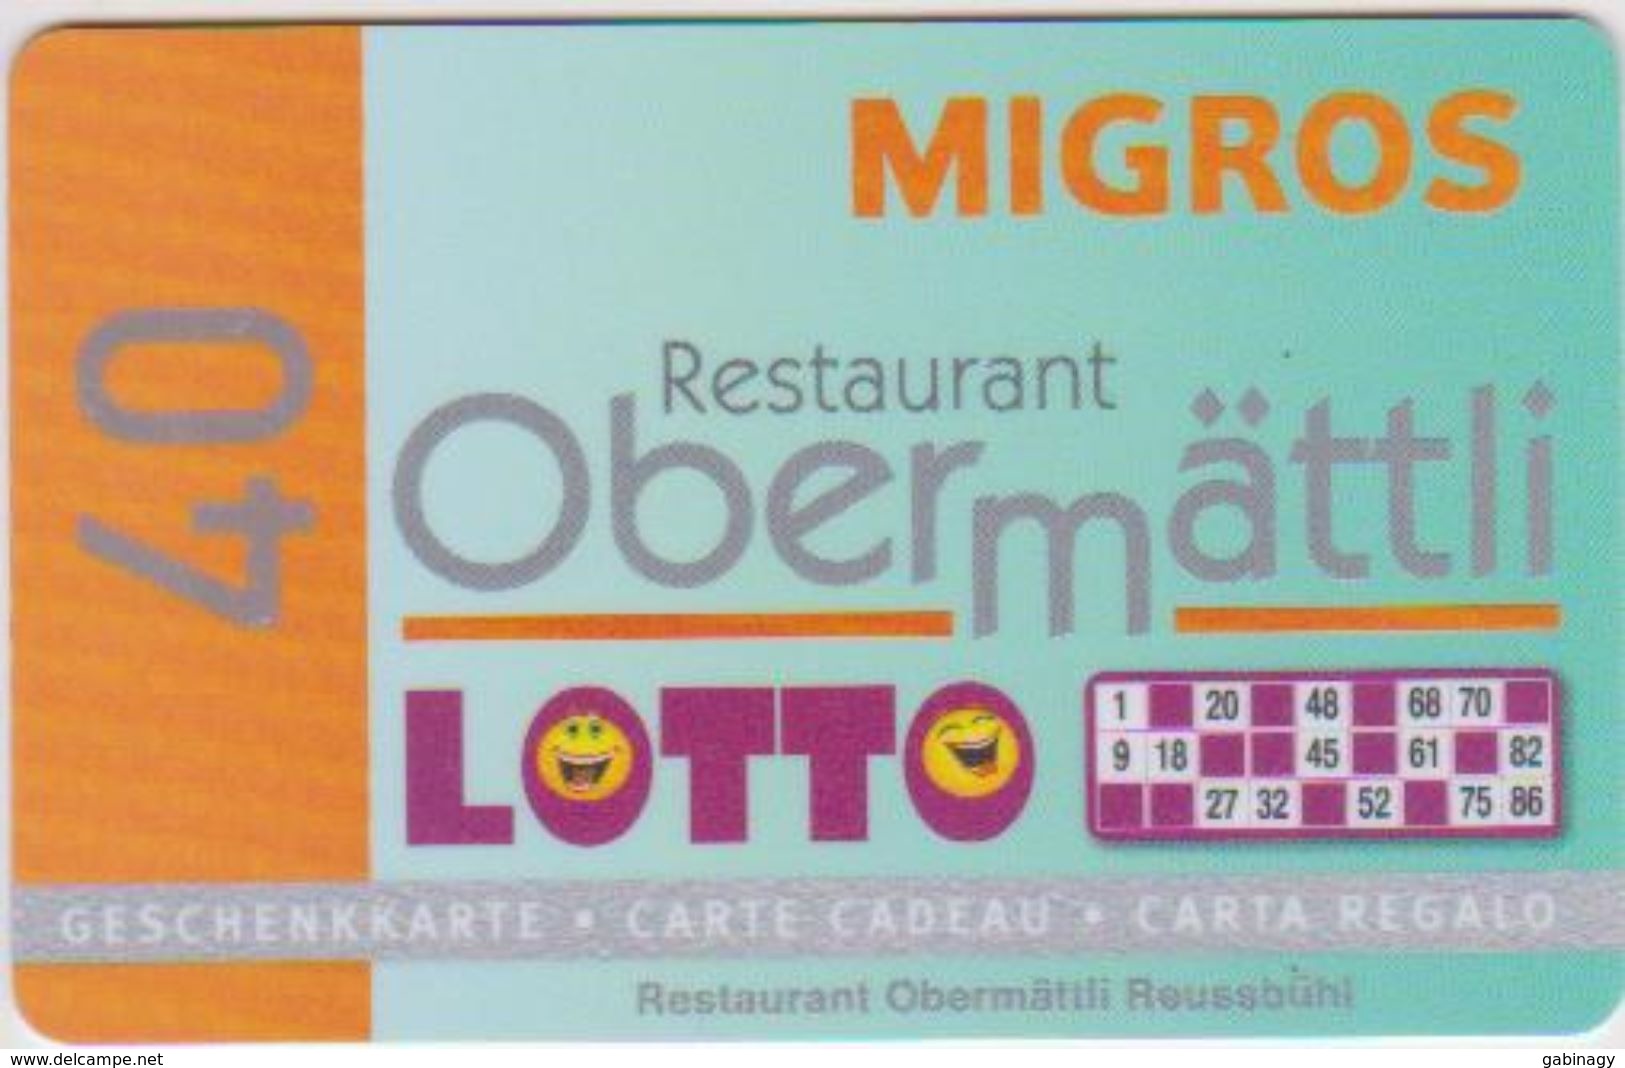 GIFT CARD - SWITZERLAND - MIGROS 305 - RESTAURANT OBERMATTLI - LOTTO 40 - Gift Cards